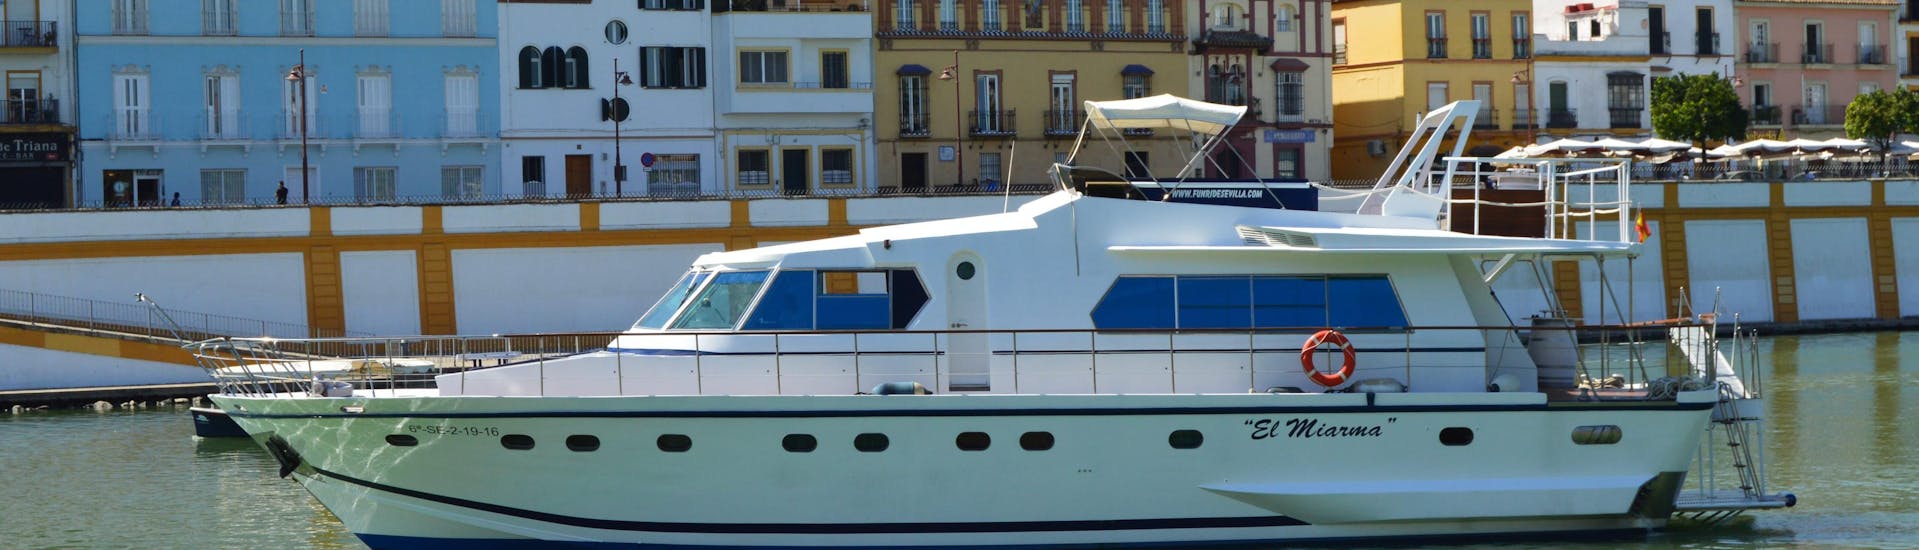 Balade en bateau Séville - Río Guadalquivir avec Visites touristiques.